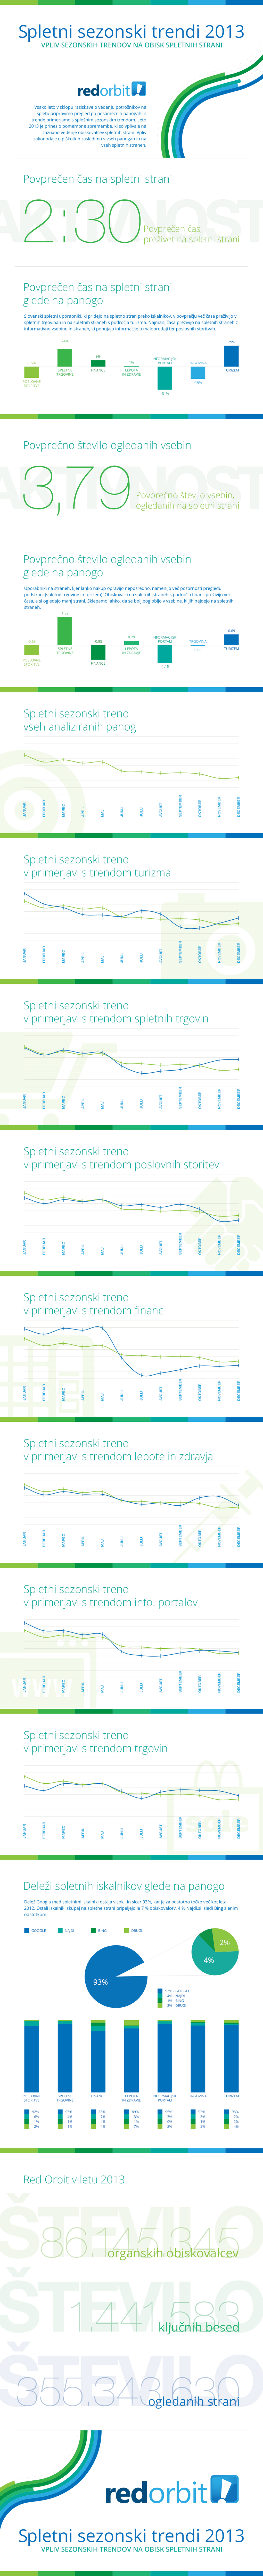 Infografika - Spletni trendi za leto 2013